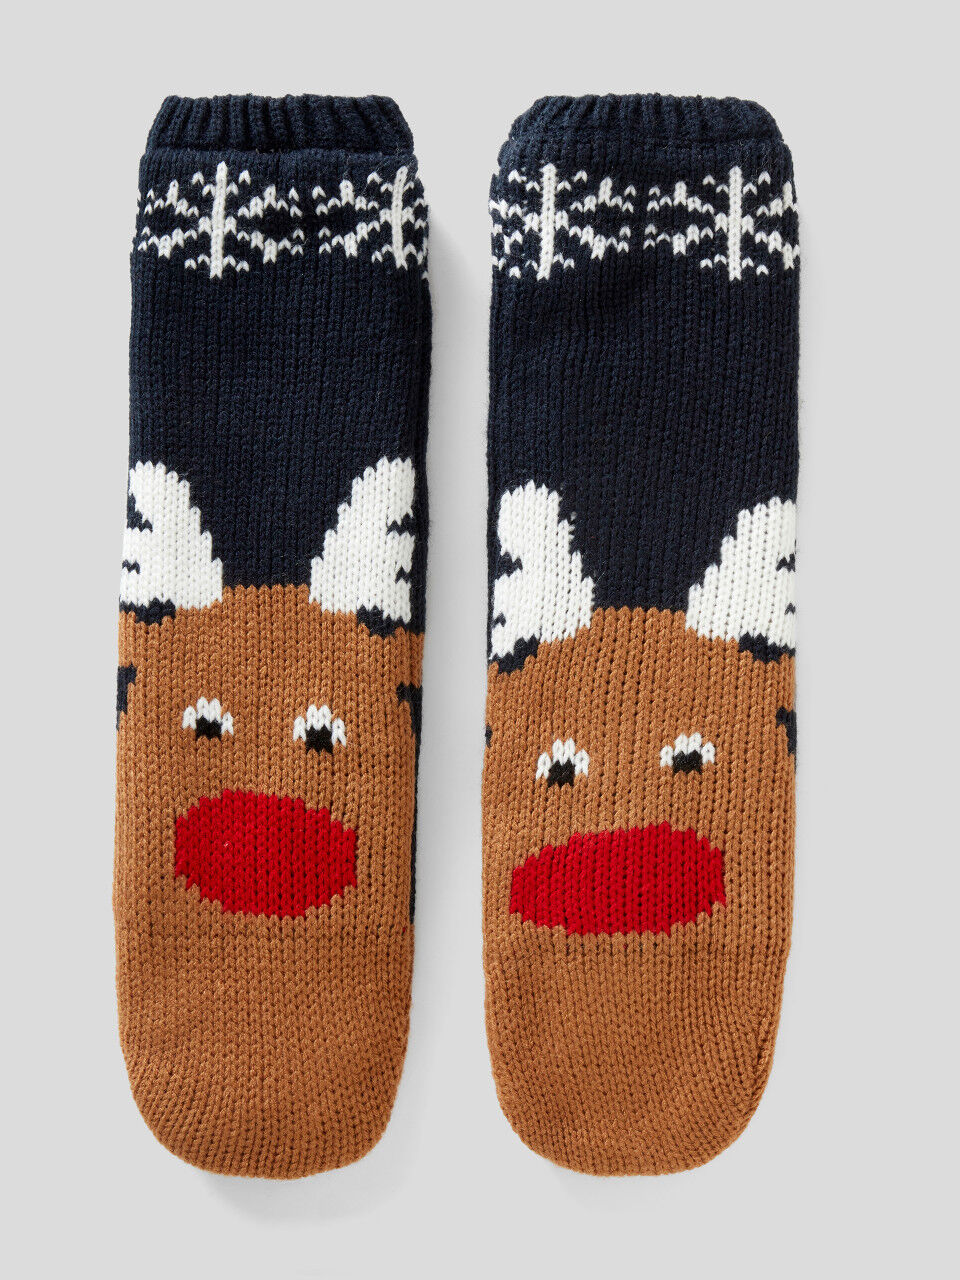 Knit reindeer socks